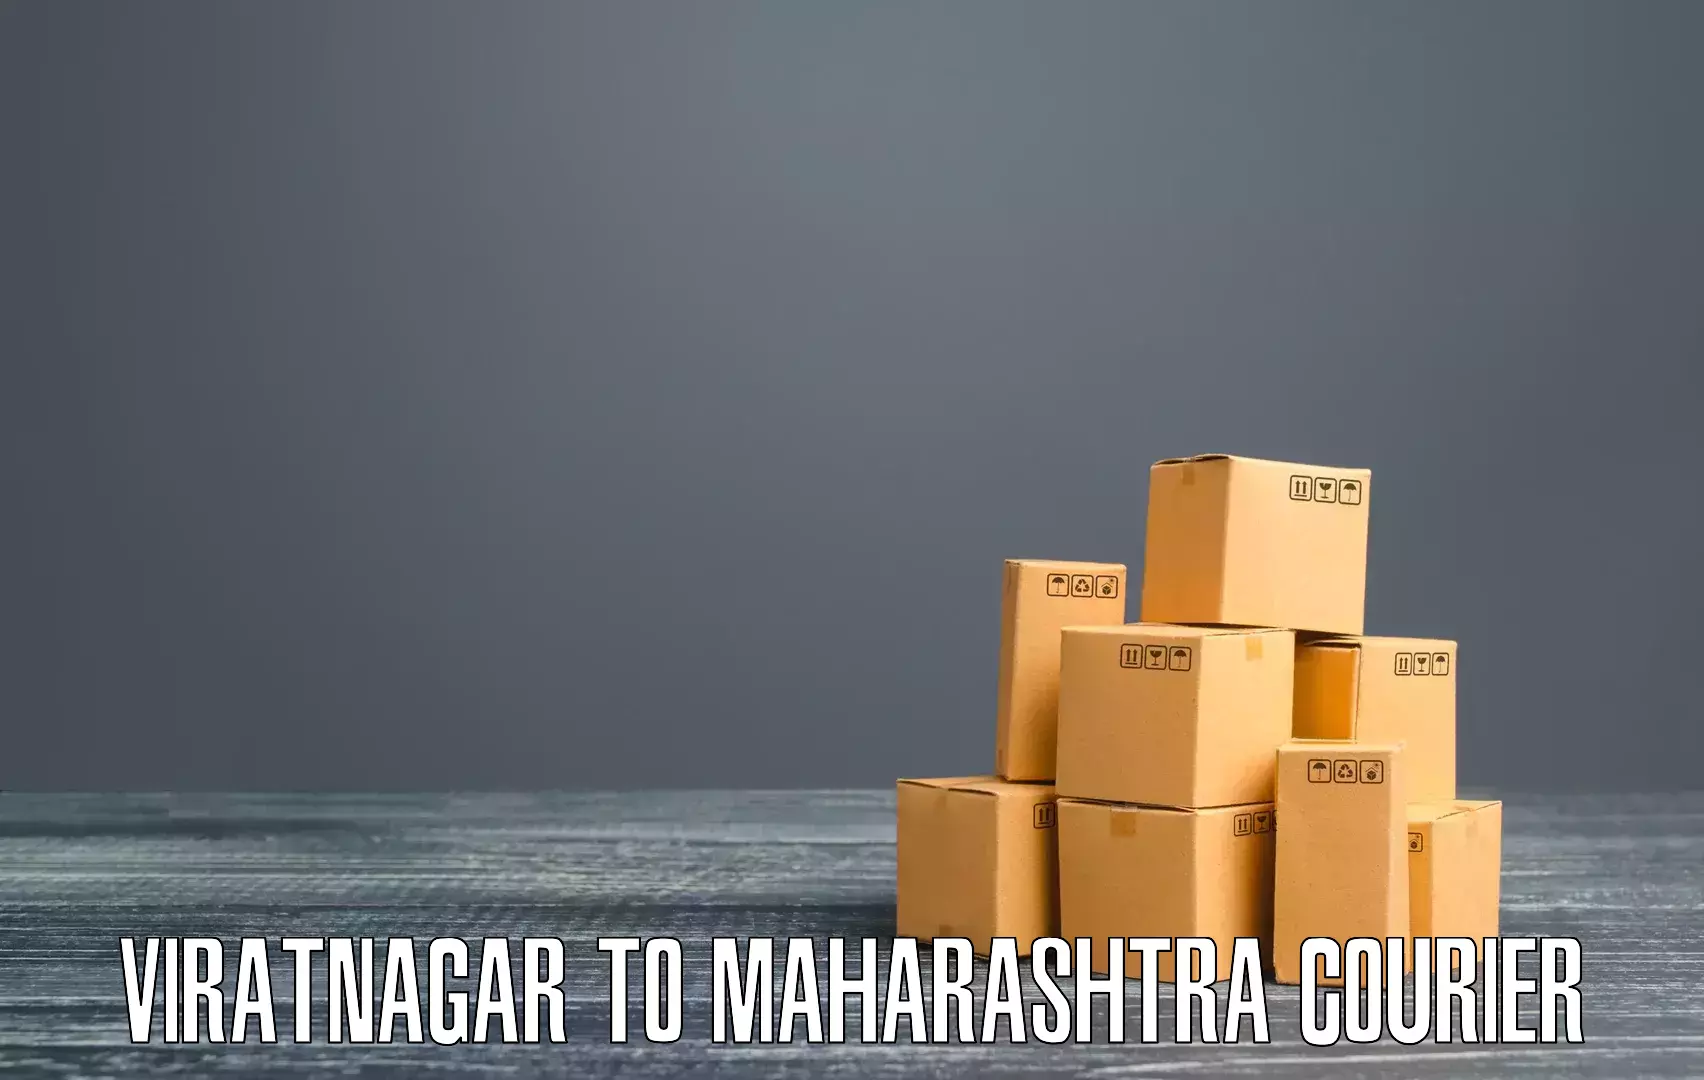 Cargo delivery service Viratnagar to Yavatmal